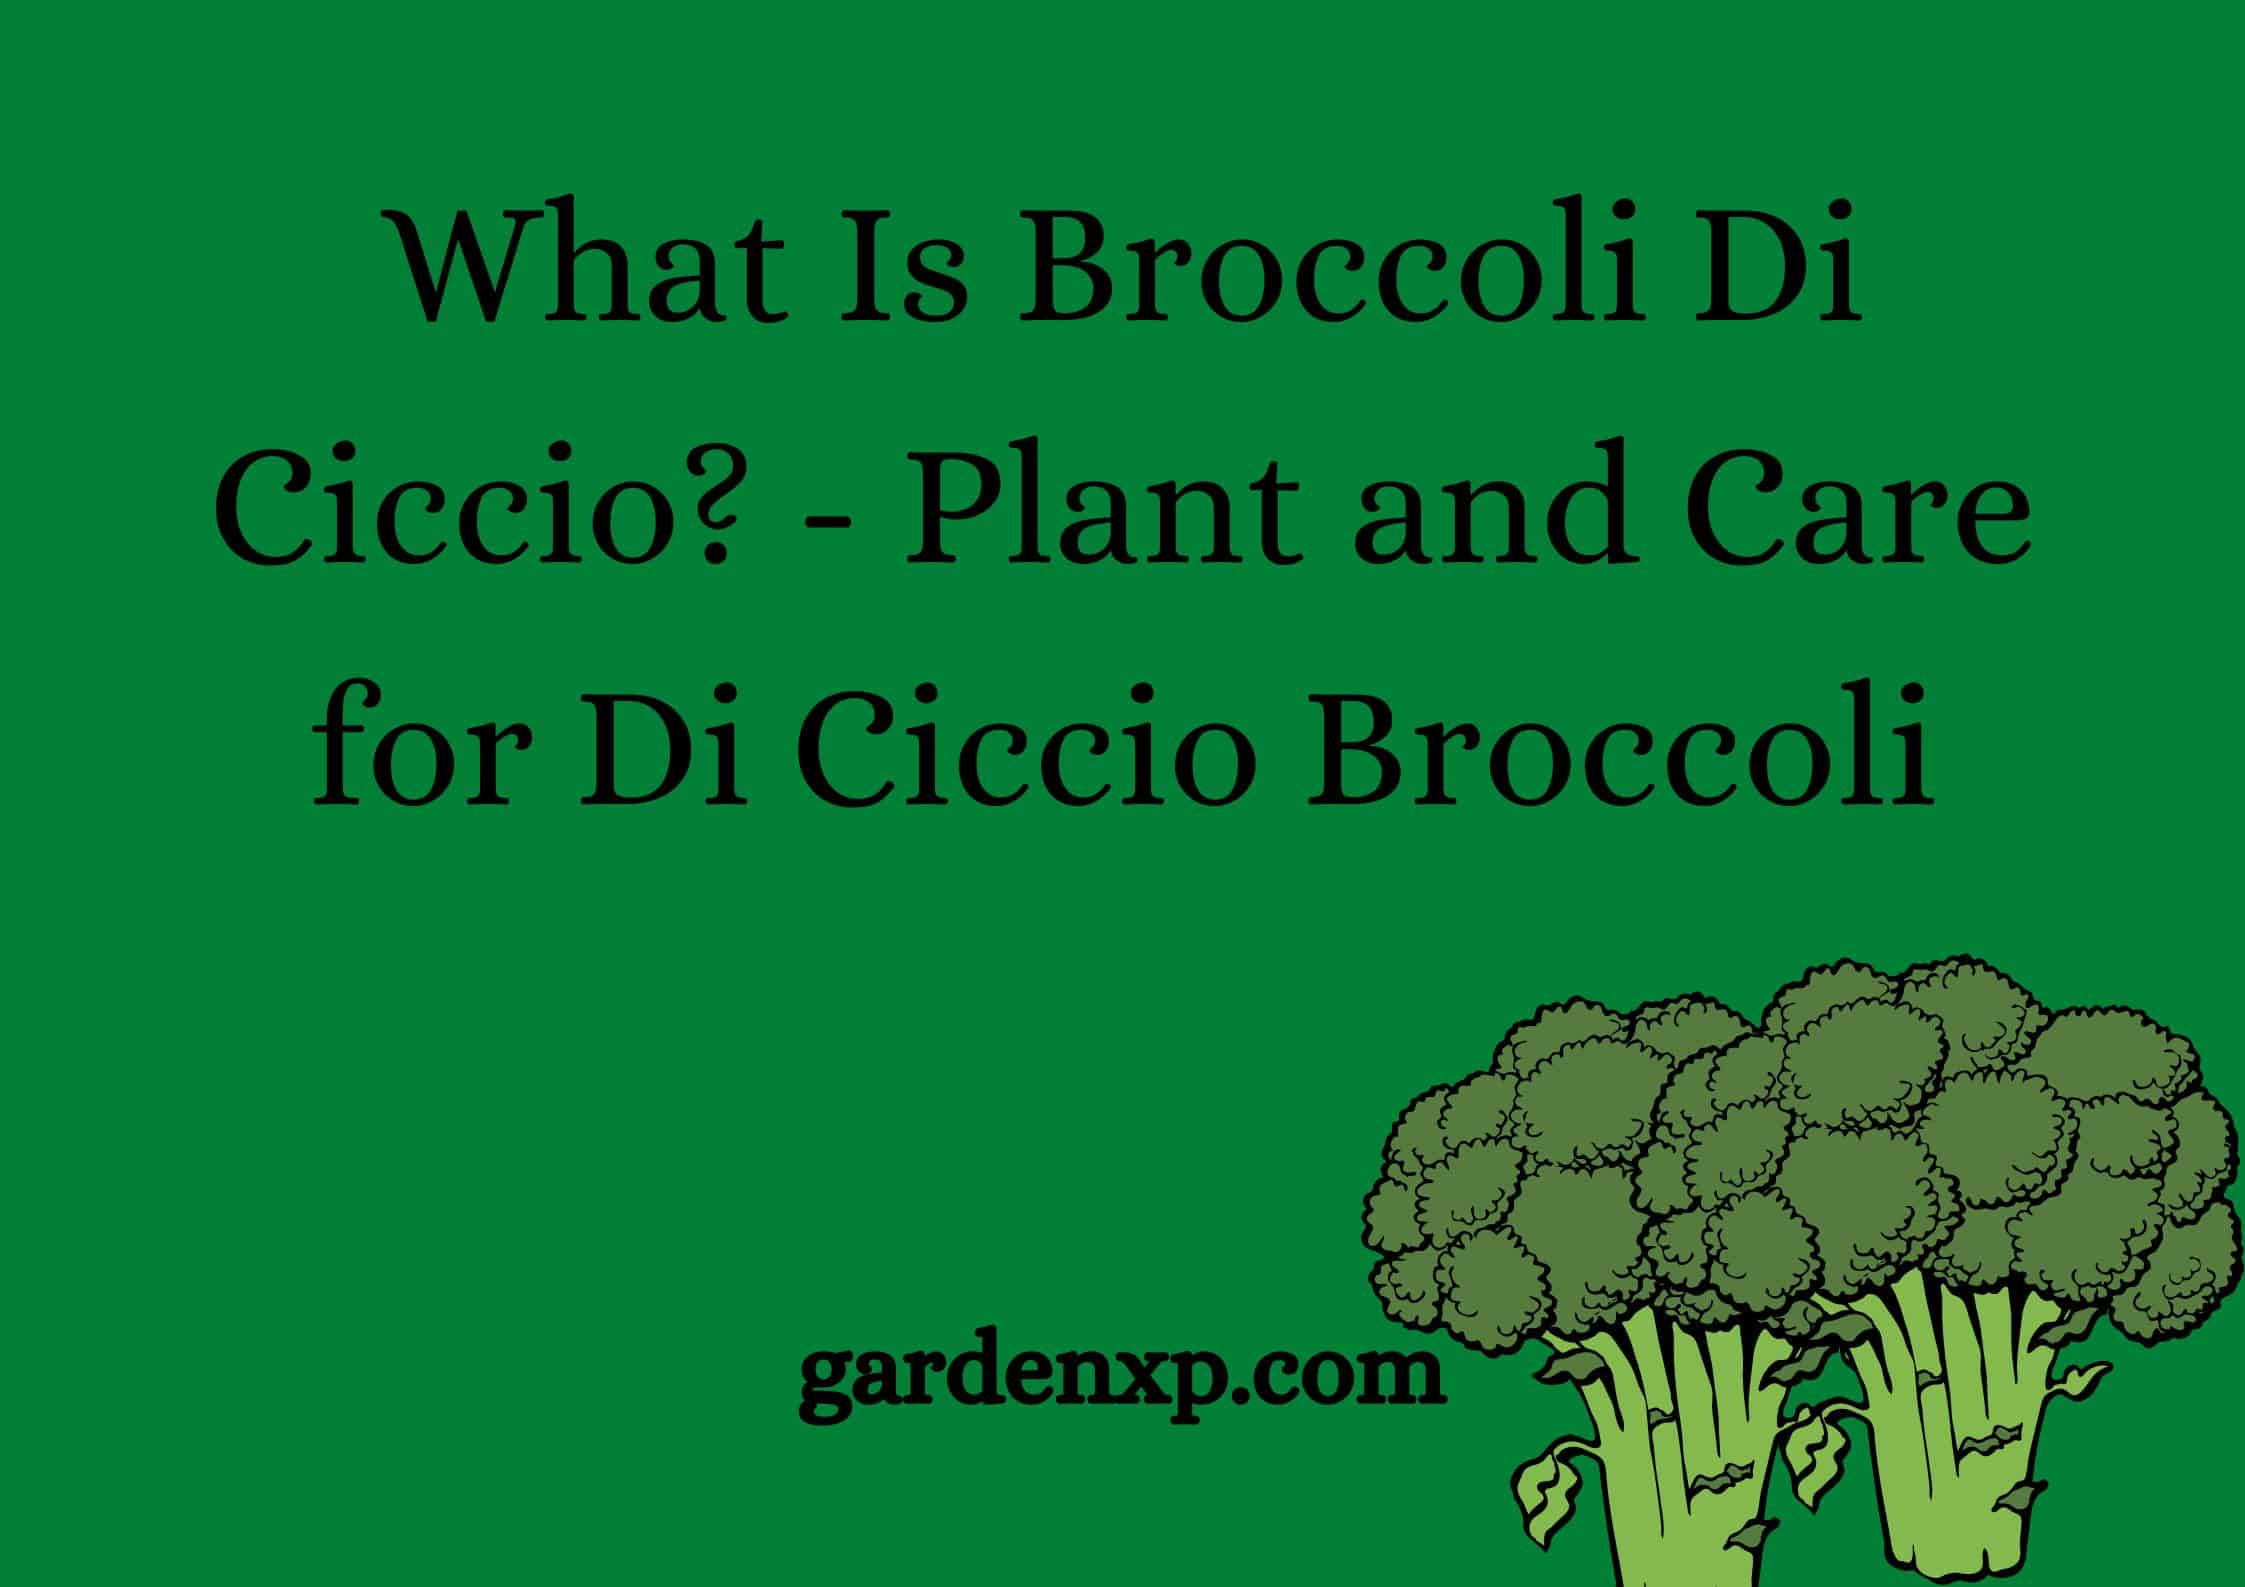 What Is Broccoli Di Ciccio? - Plant and Care for Di Ciccio Broccoli